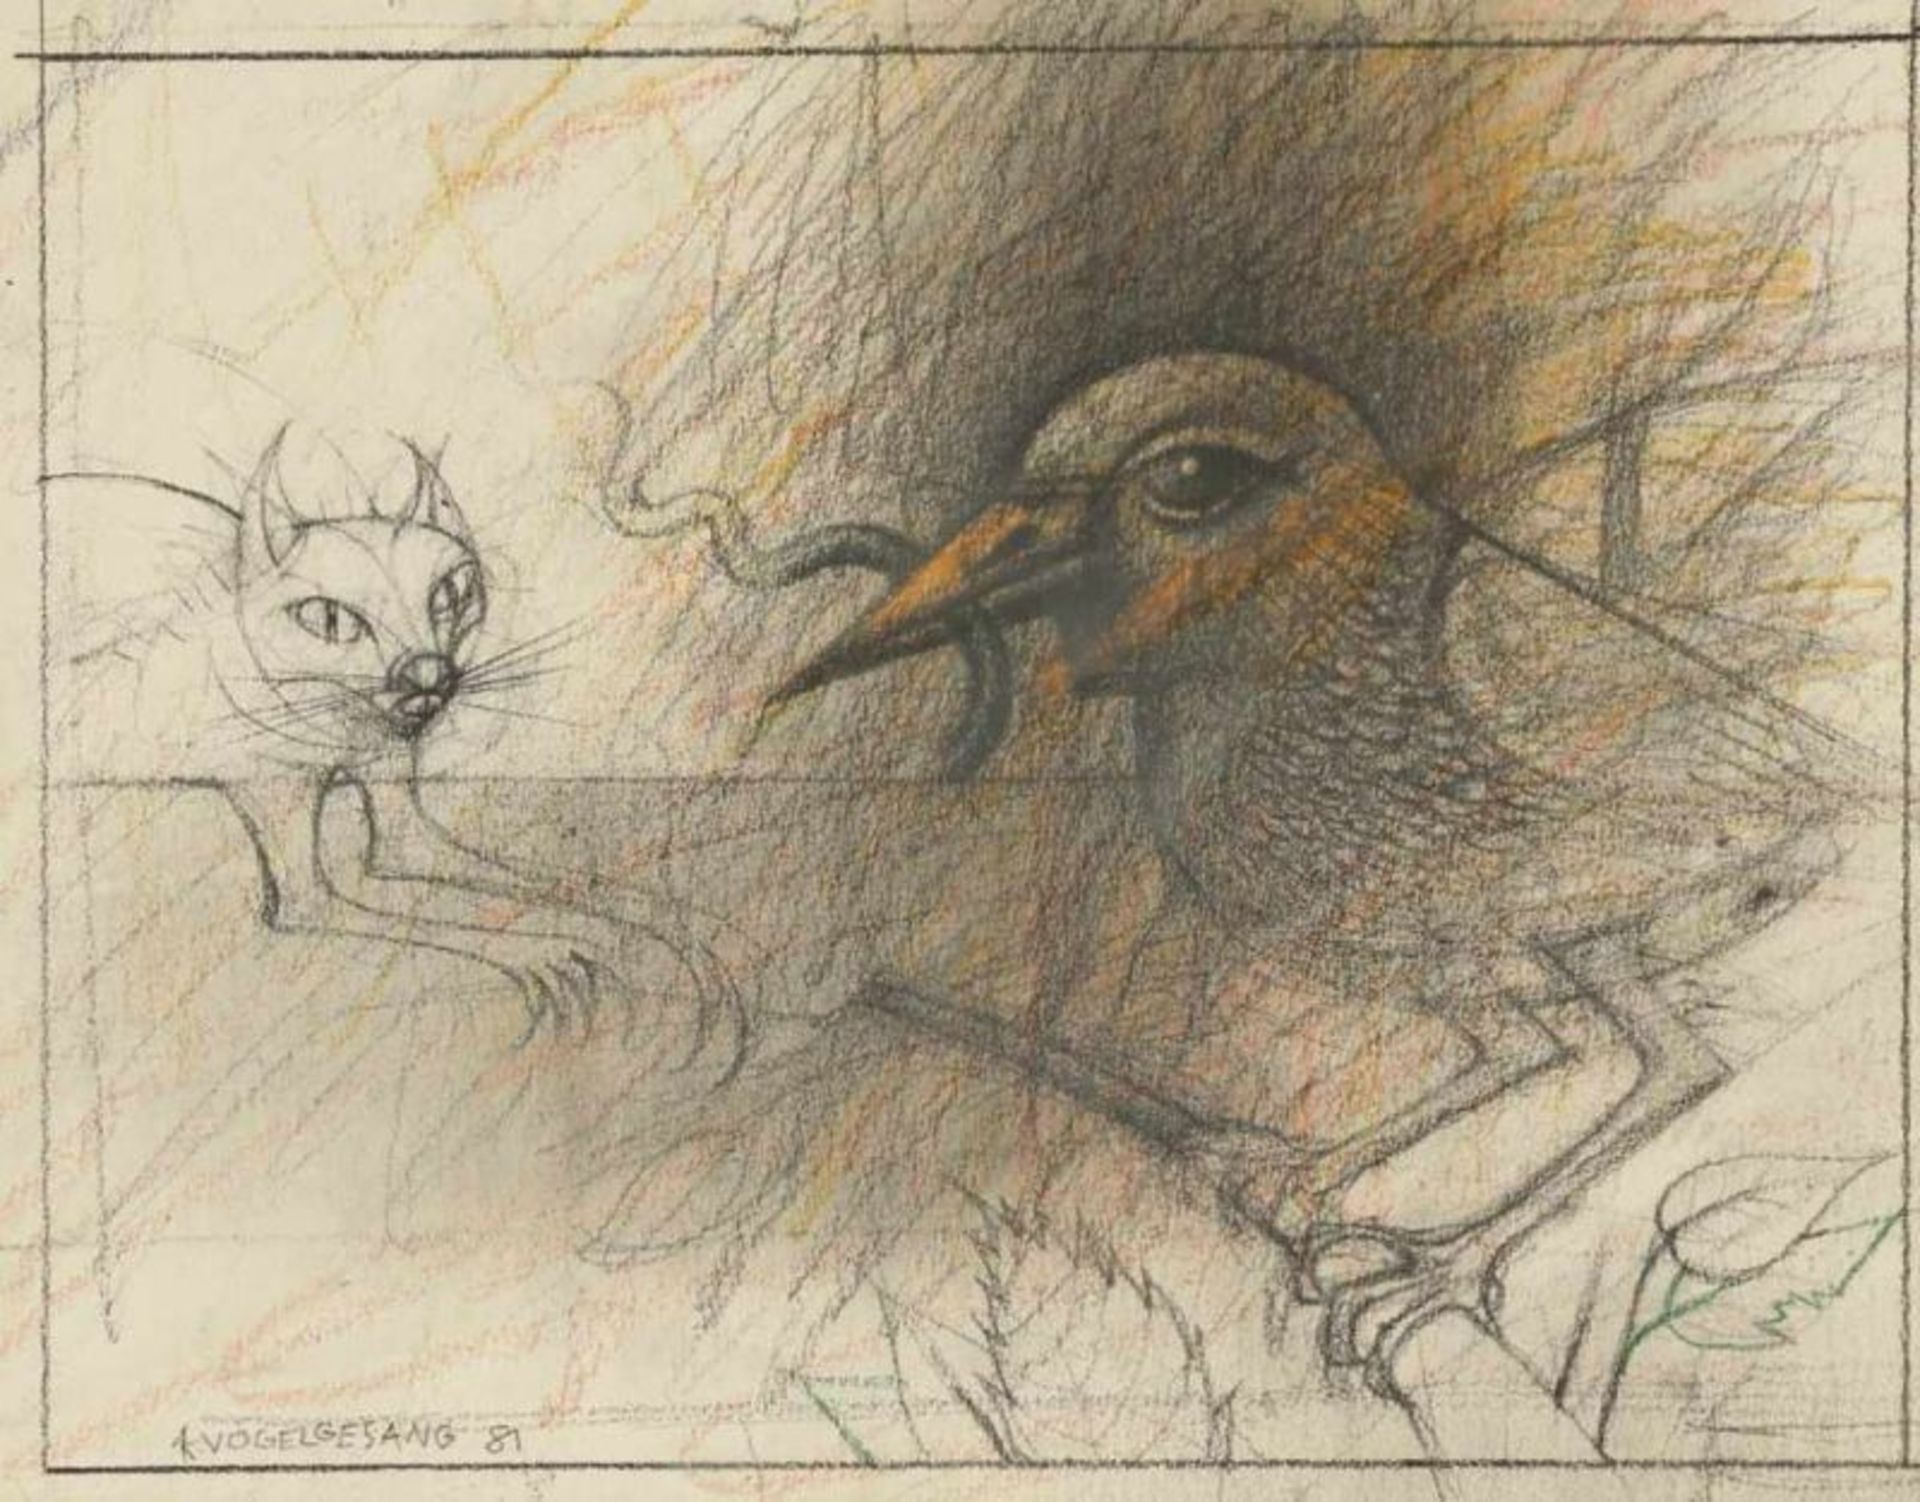 Klaus Vogelgesang 1945 Radebeul - "Vogel und Katze" - Kohle und Farbstifte/Papier. 16,5 x 21,5 cm. - Image 2 of 2